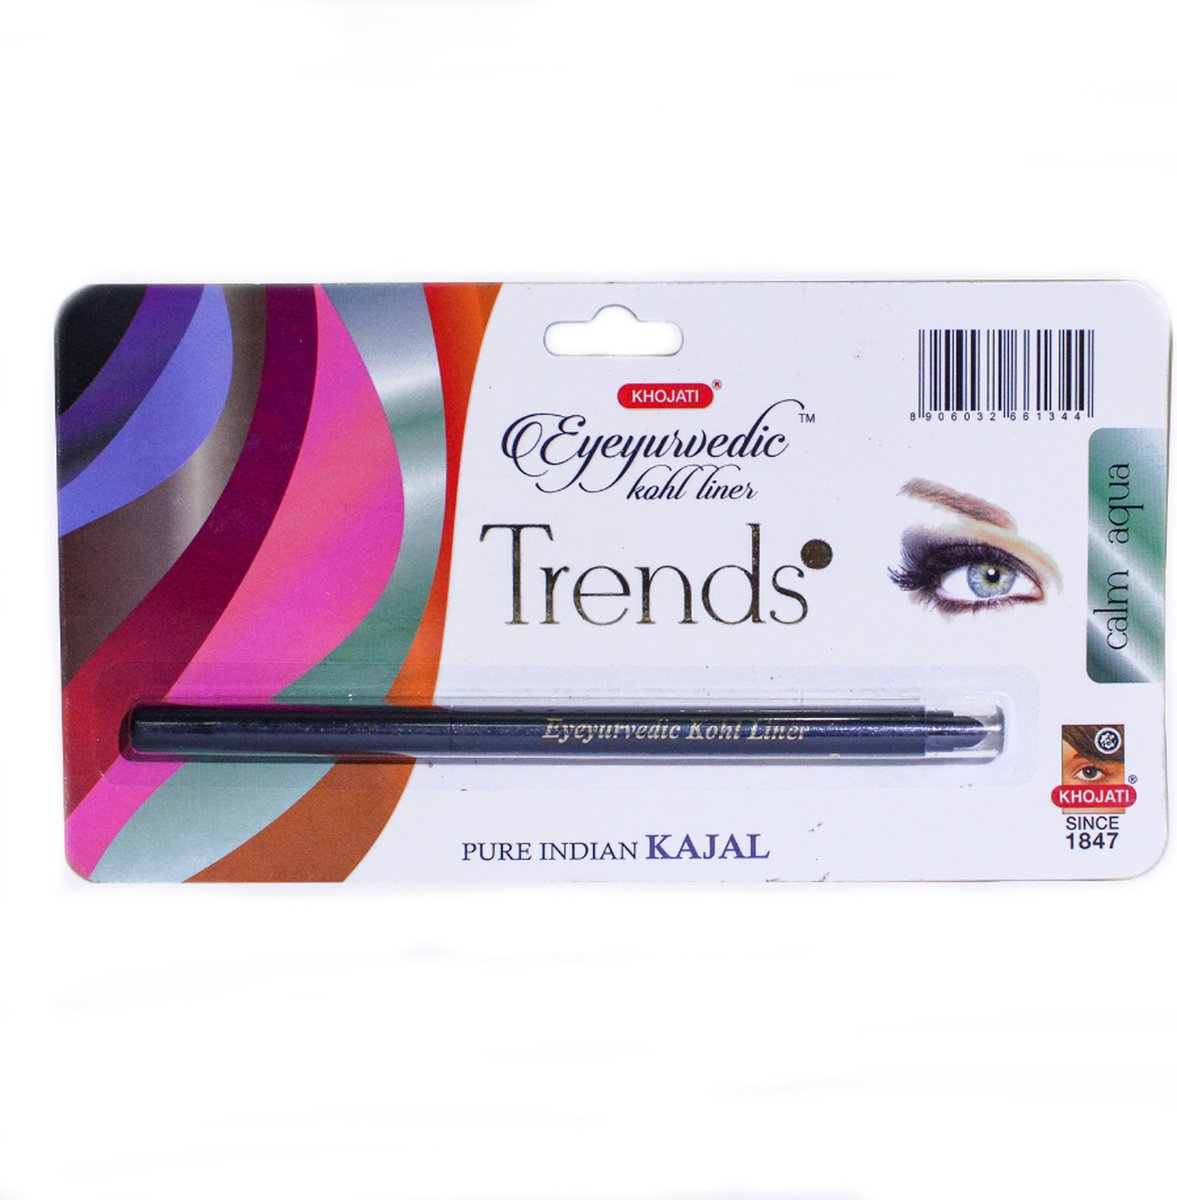 K-Veda - Eyeyurvedic Kohl Liner Trends - Calm Aqua Kleur - Eyeliner - Infused with Pure Cows Ghee - Organic Coconut Oil - Eyeliner Potlood - Calms and Relaxes Stressed Eyes Makeup